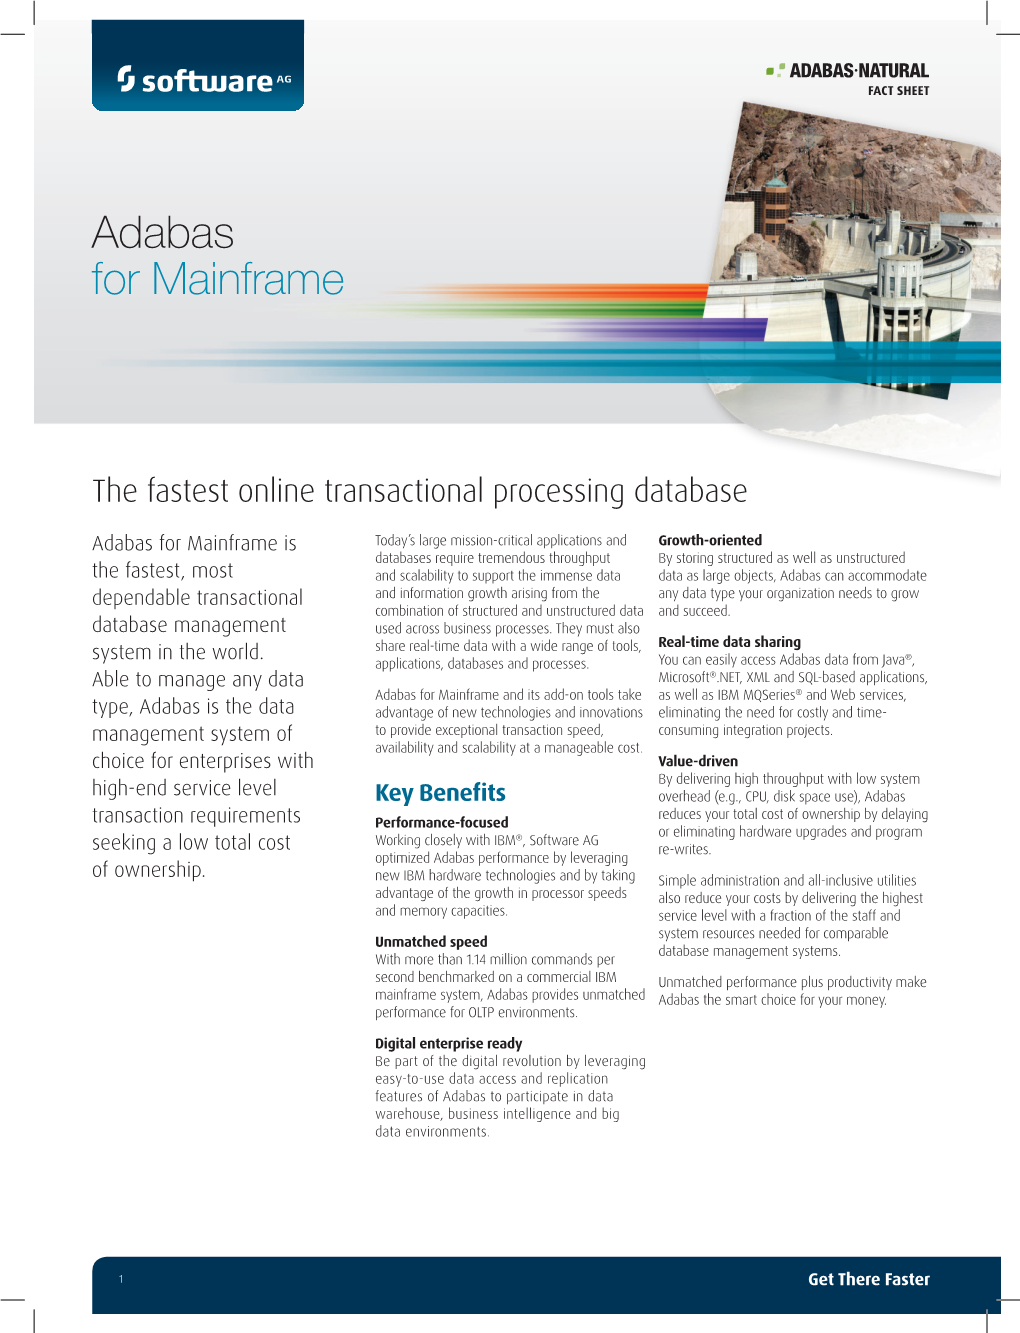 Adabas for Mainframe